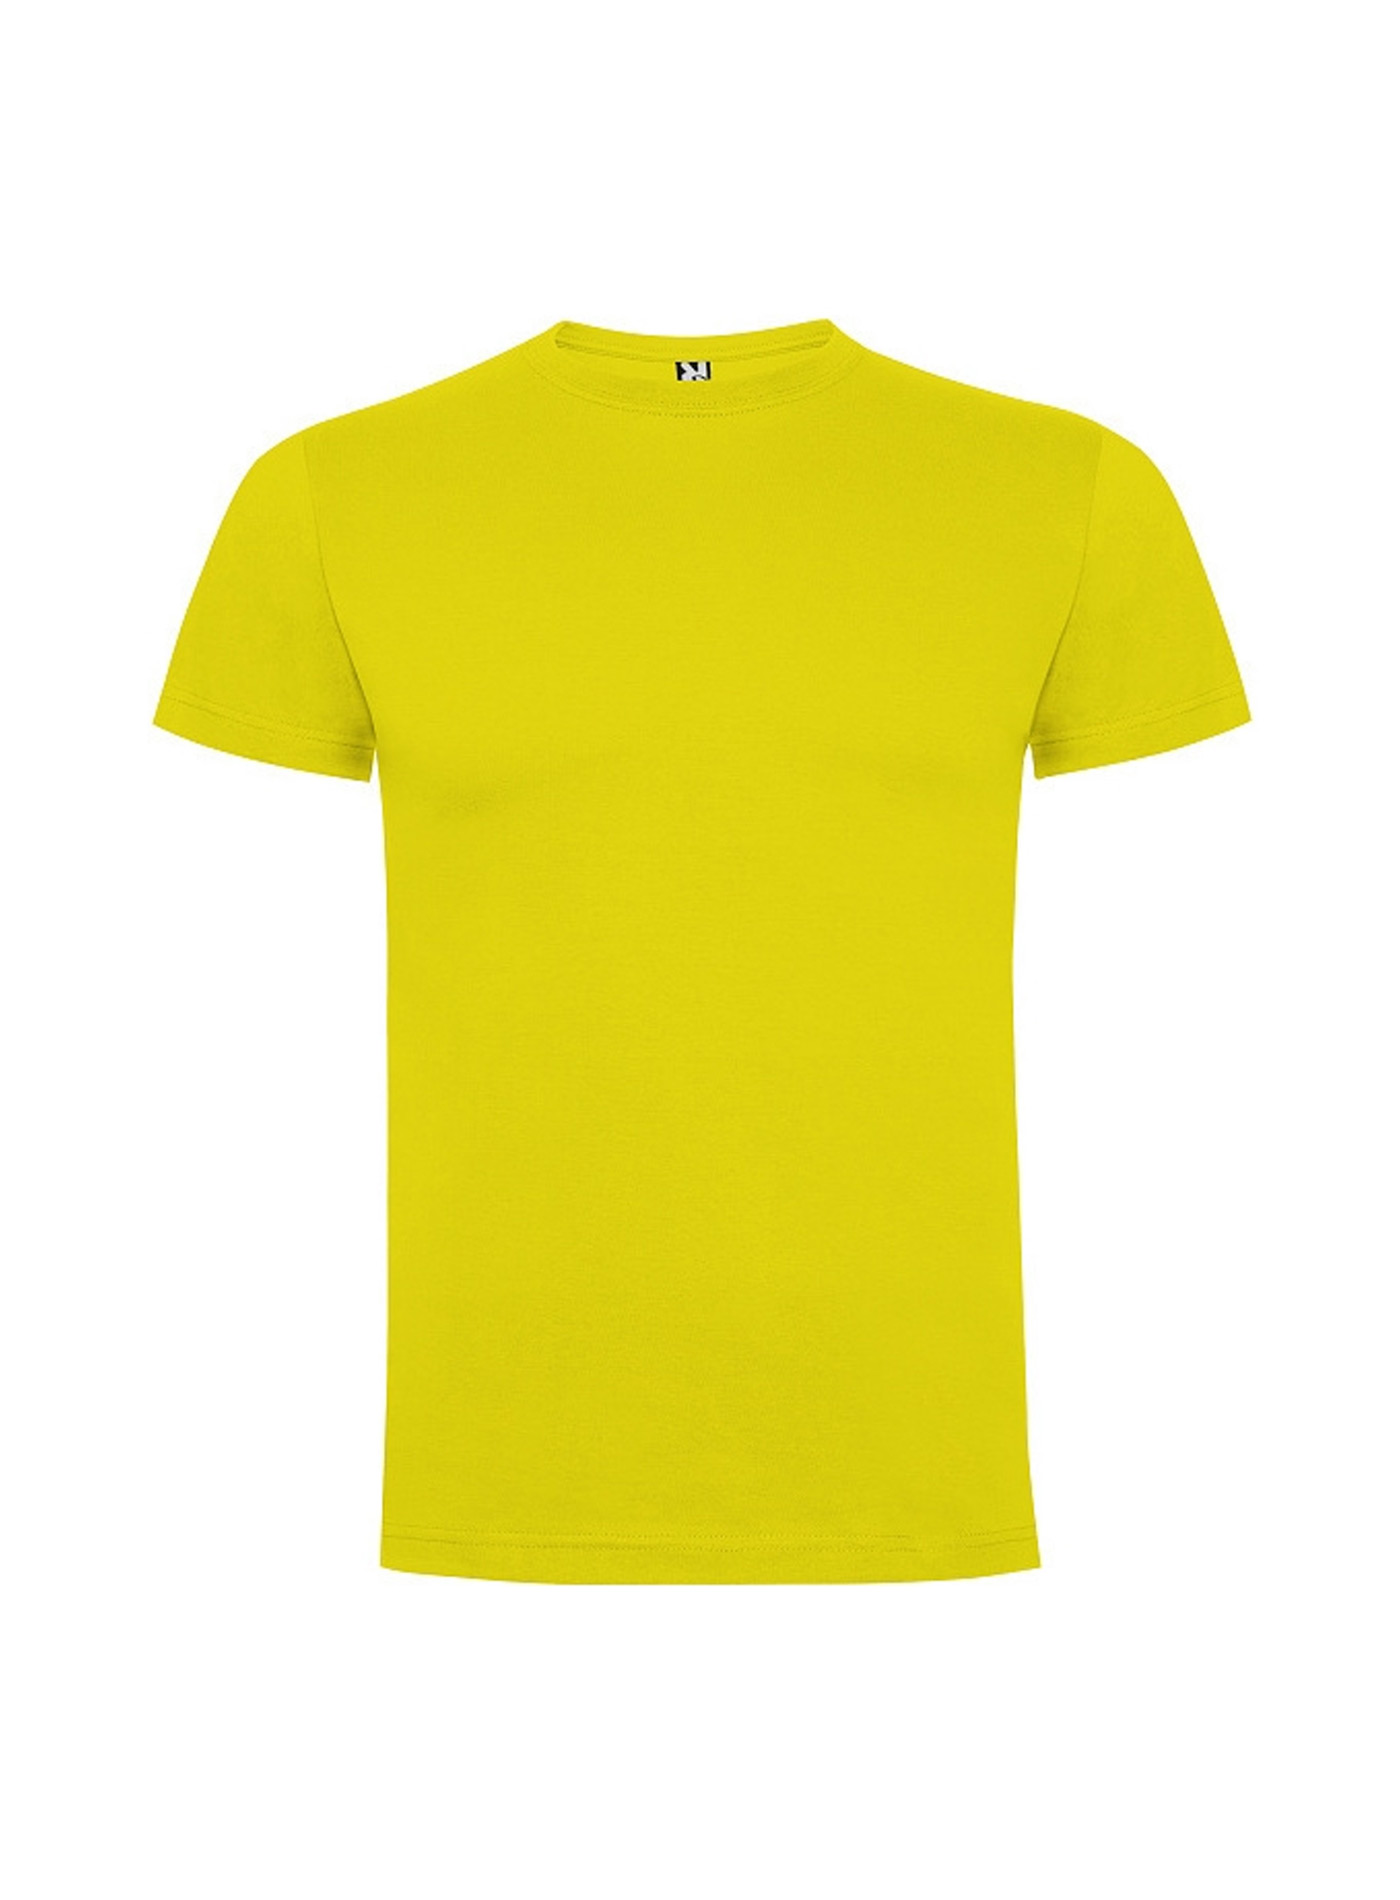 Dětské tričko Roly Dogo premium - Žlutá 3-4